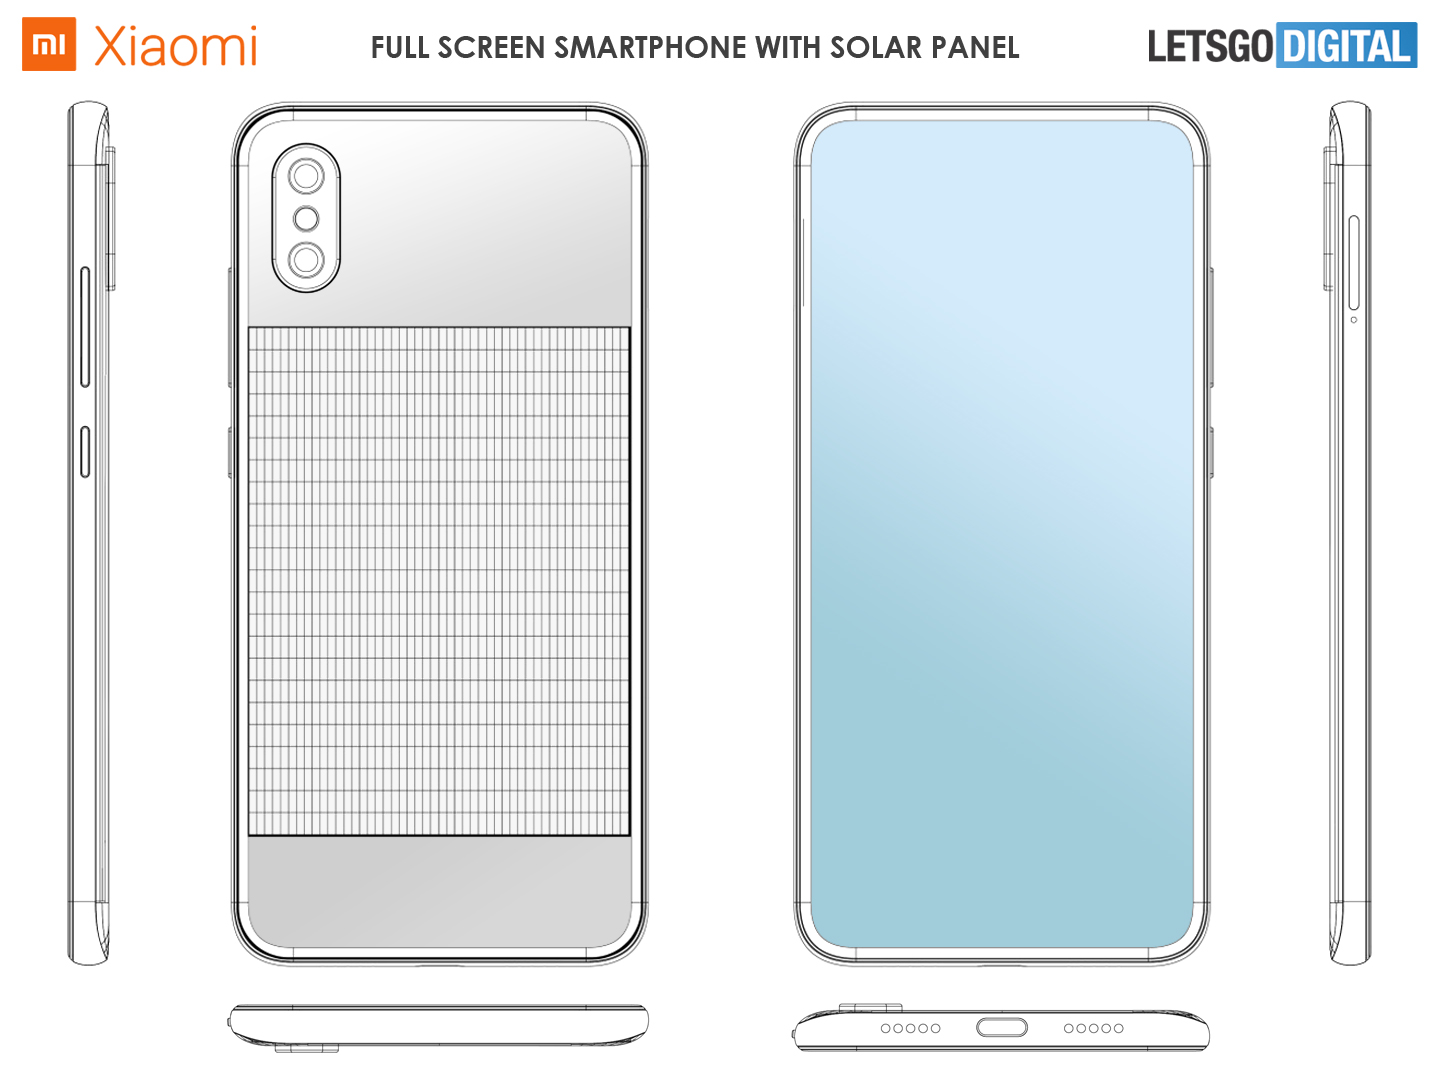 xiaomi solar phone patent